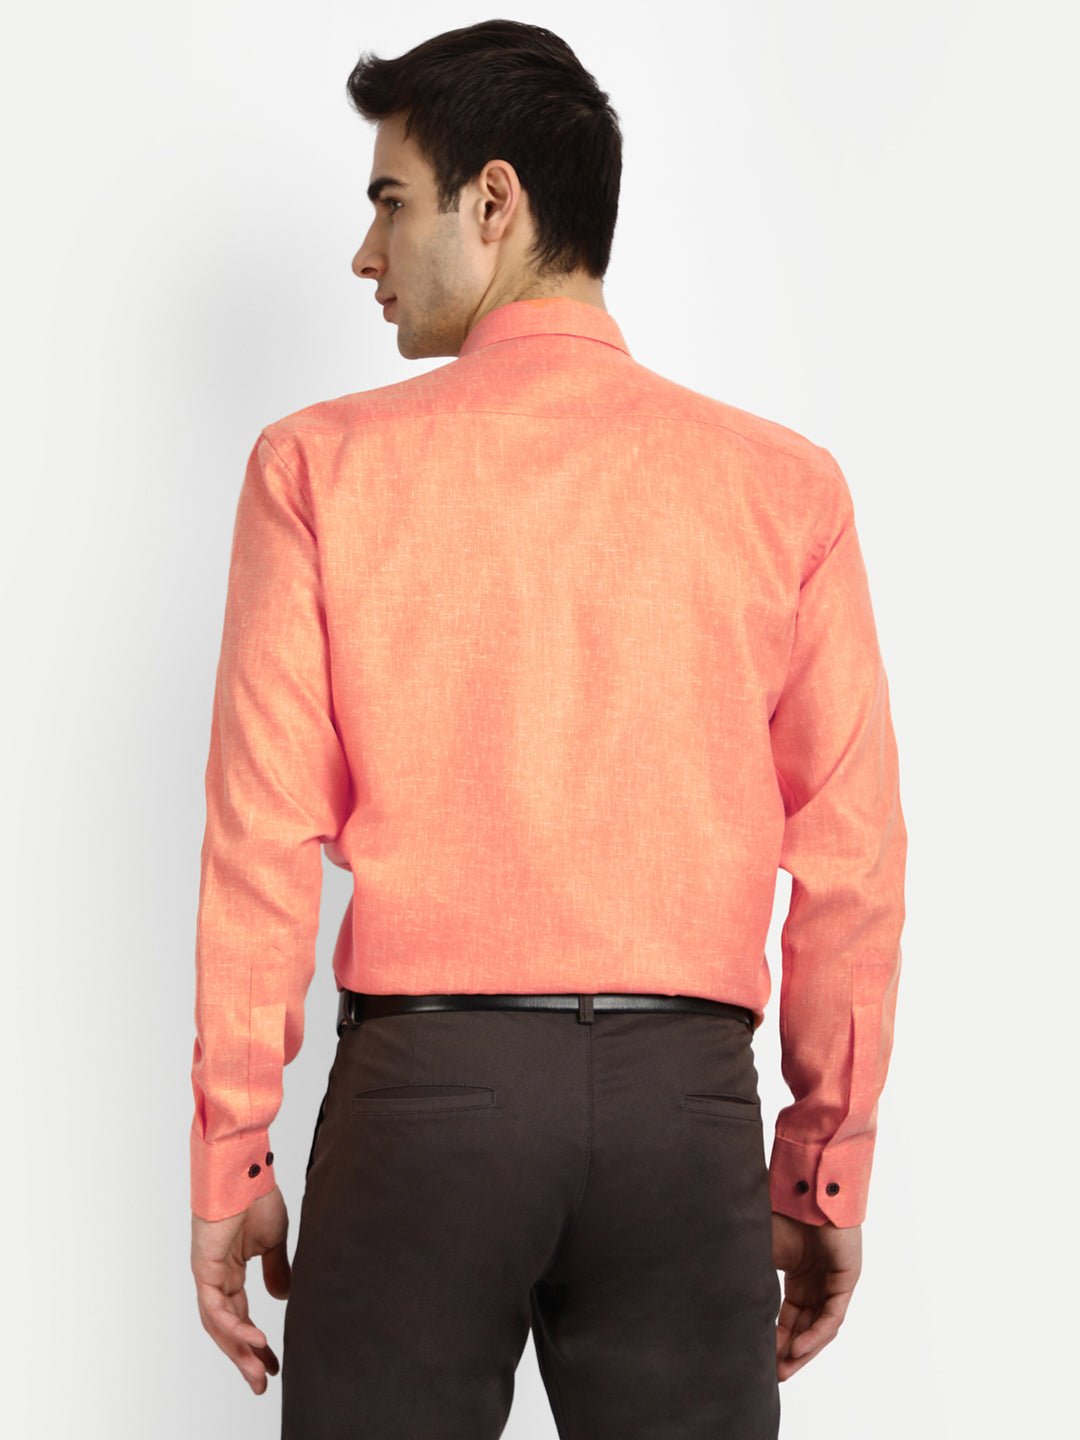 Punekar Cotton Light Orange Color Cotton Linen Formal Shirt for Men&